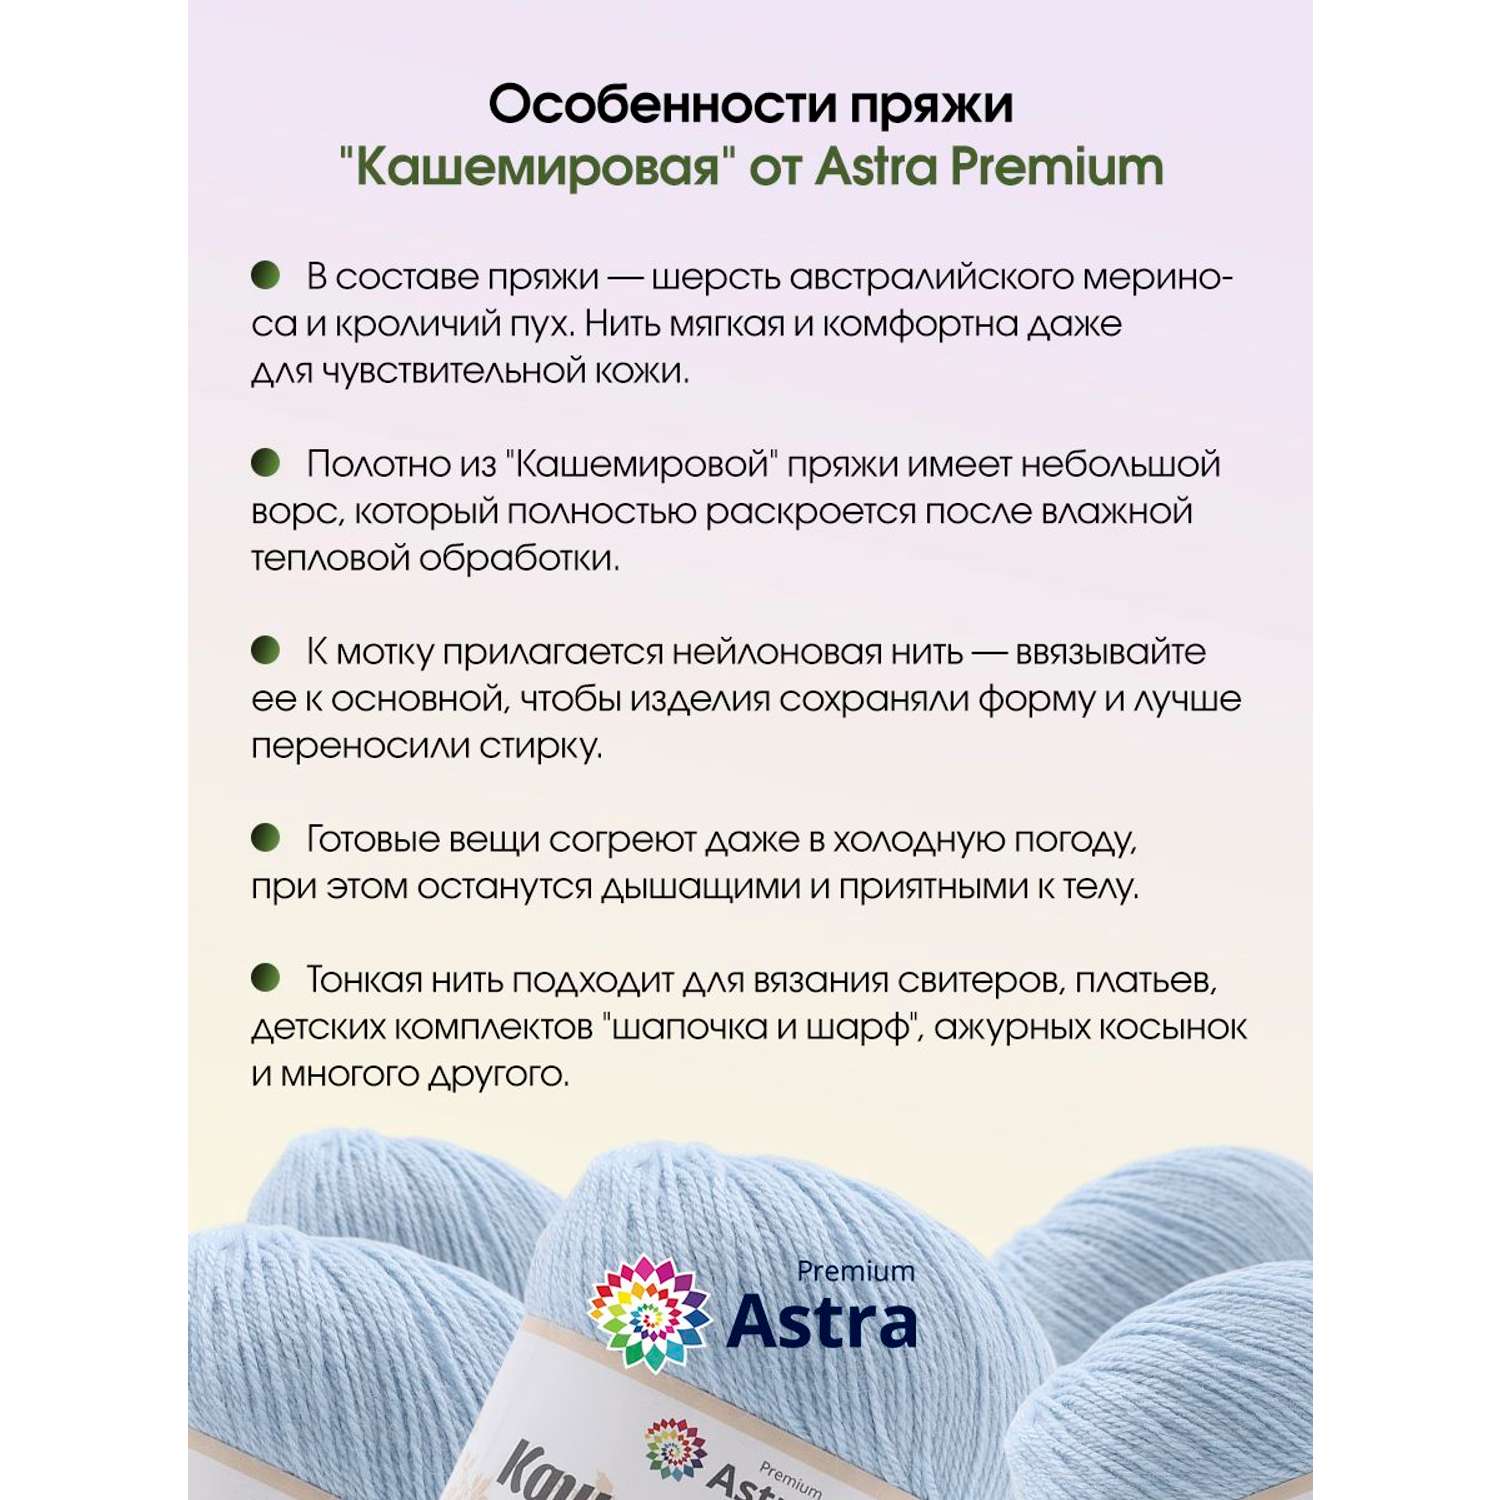 Пряжа Astra Premium Кашемировая Cashmere полушерстяная 50 г 310 м 511 светло-голубой 1 моток - фото 4